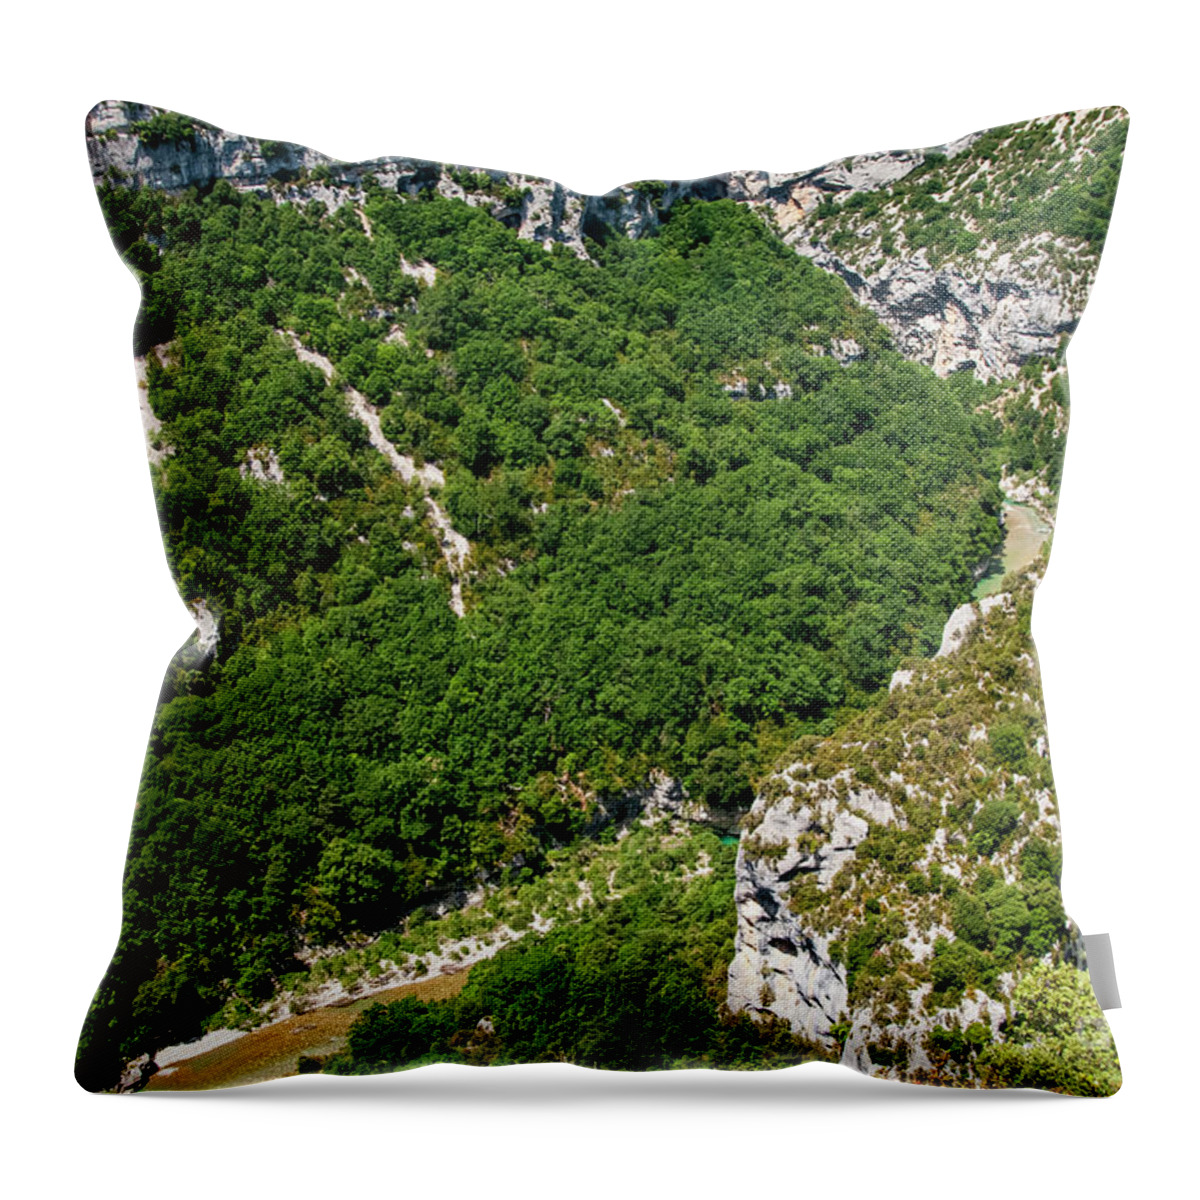 Les Gorge Du Verdon Throw Pillow featuring the photograph Ariel Vies of Gorge du Verdon by Bob Phillips